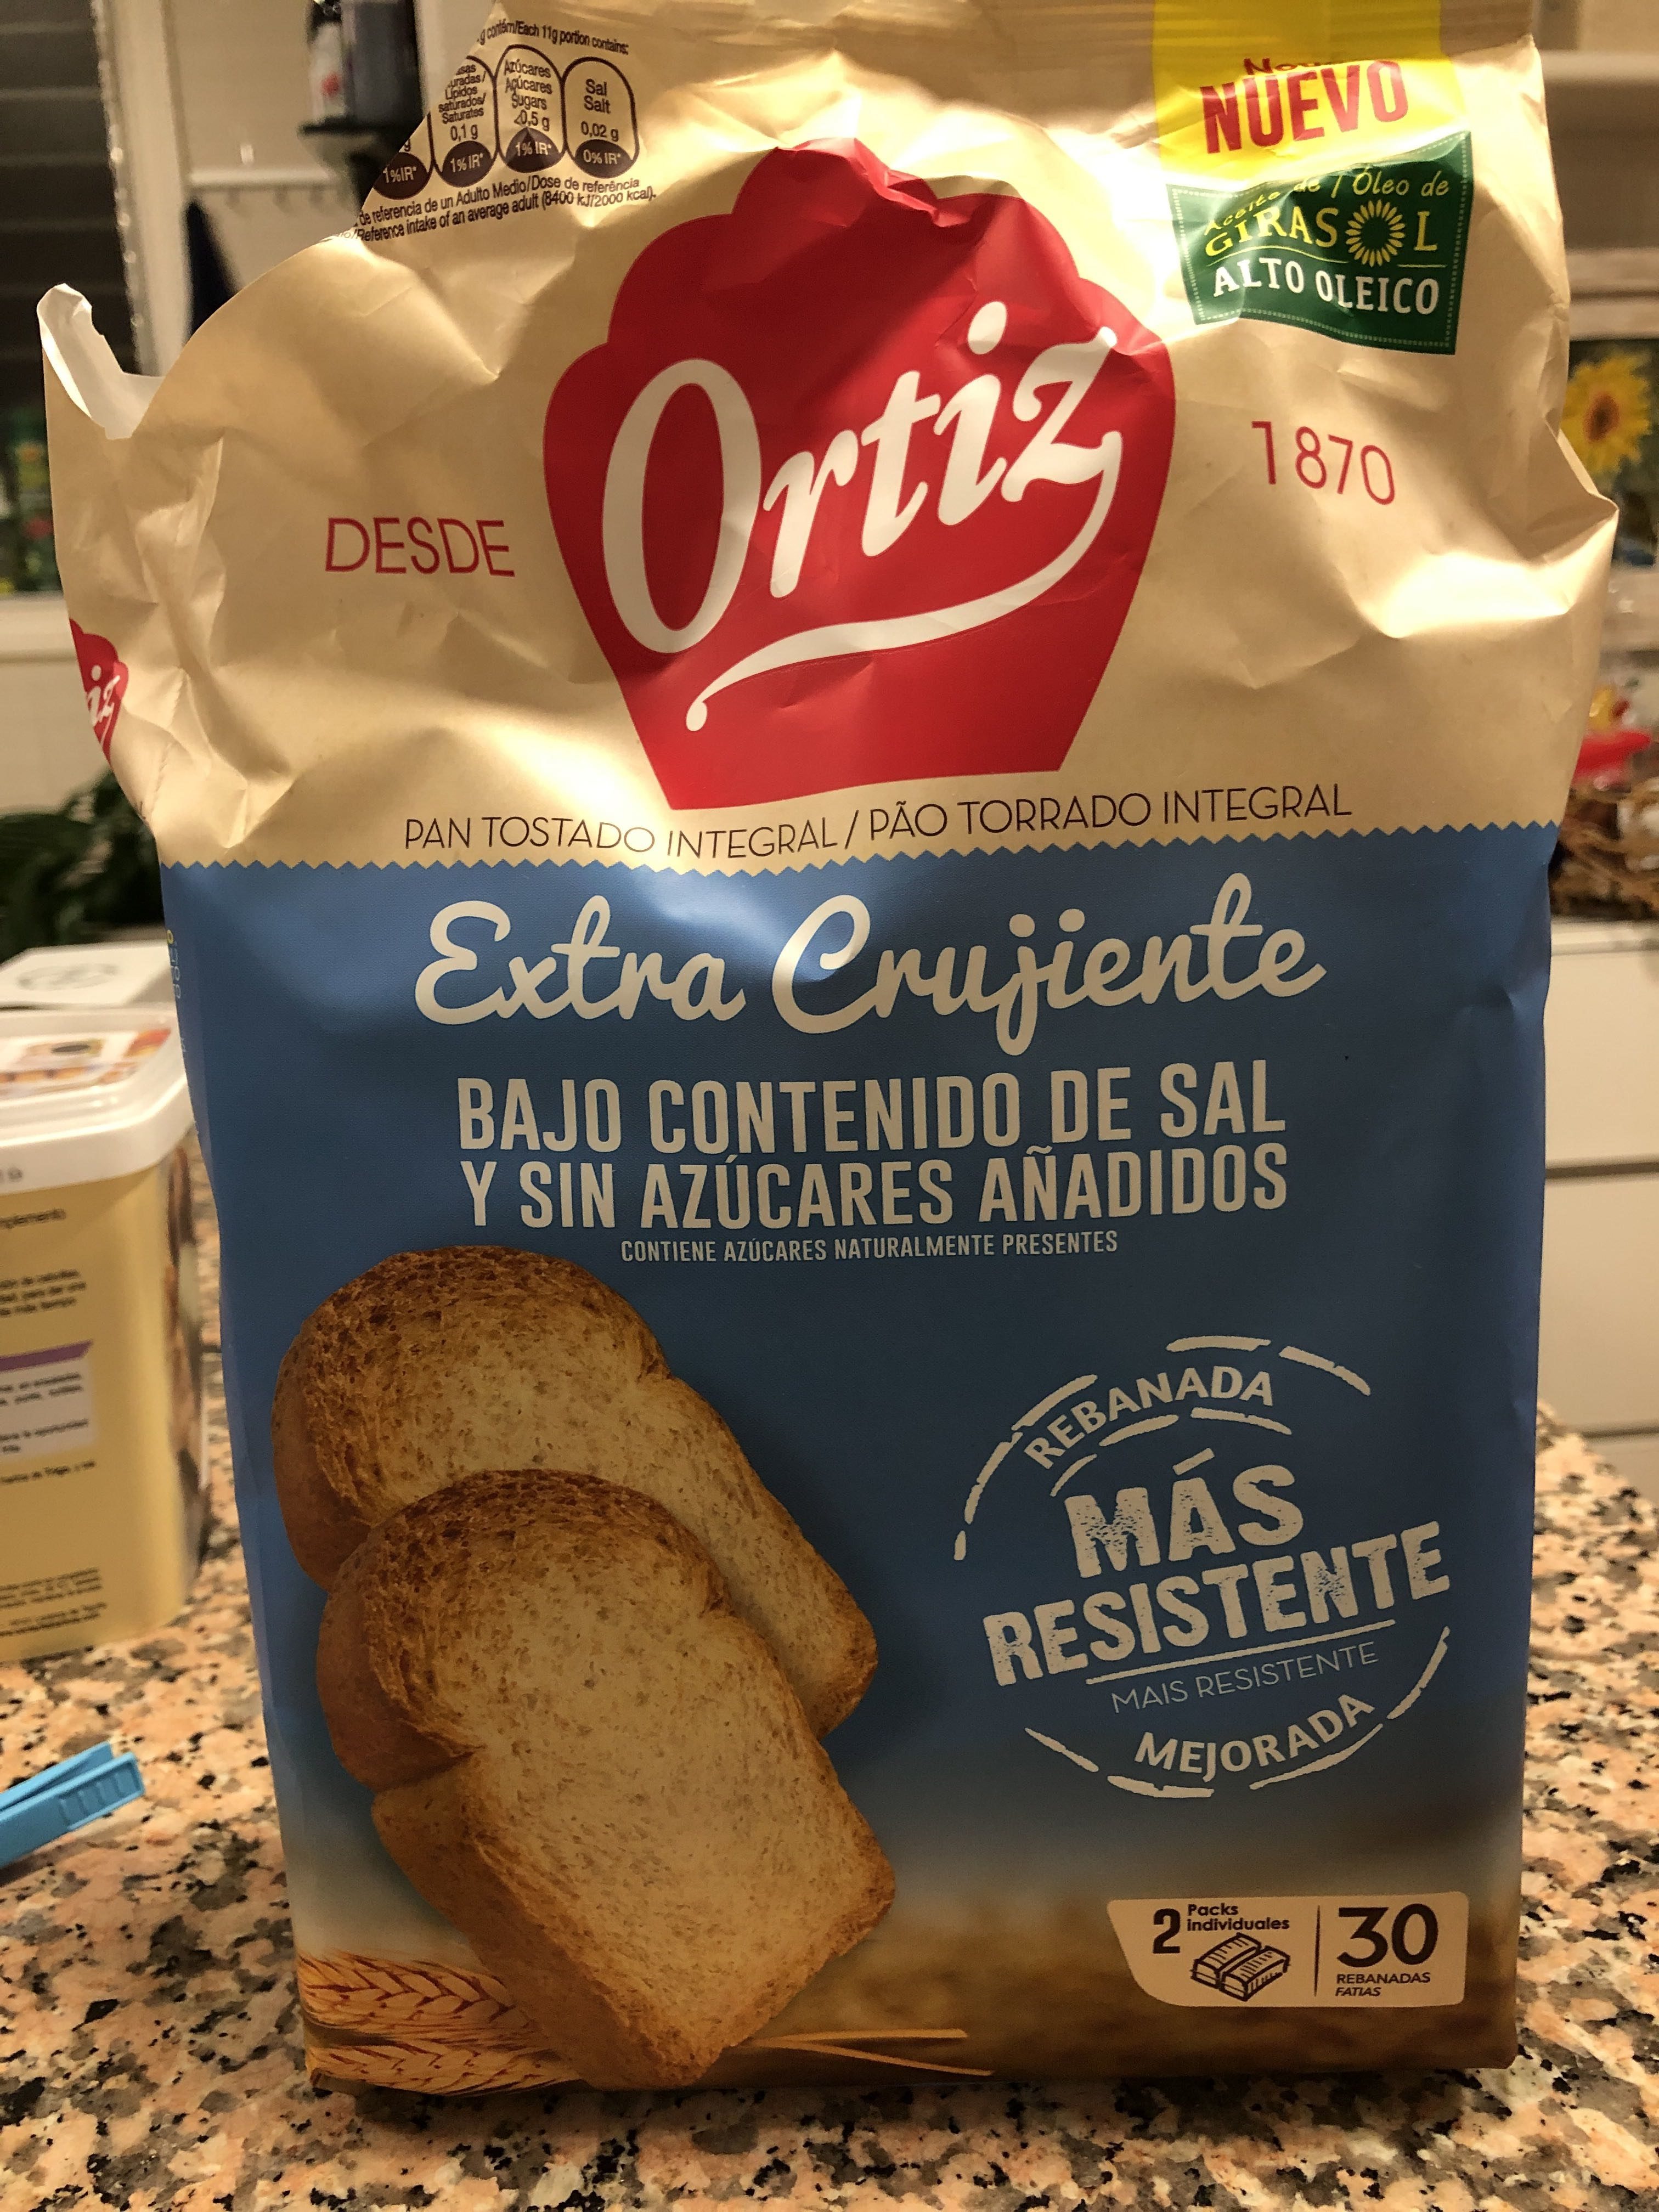 Pan tostado extracrujiente bajo de sal y sin azúcares añadidos - Producte - es